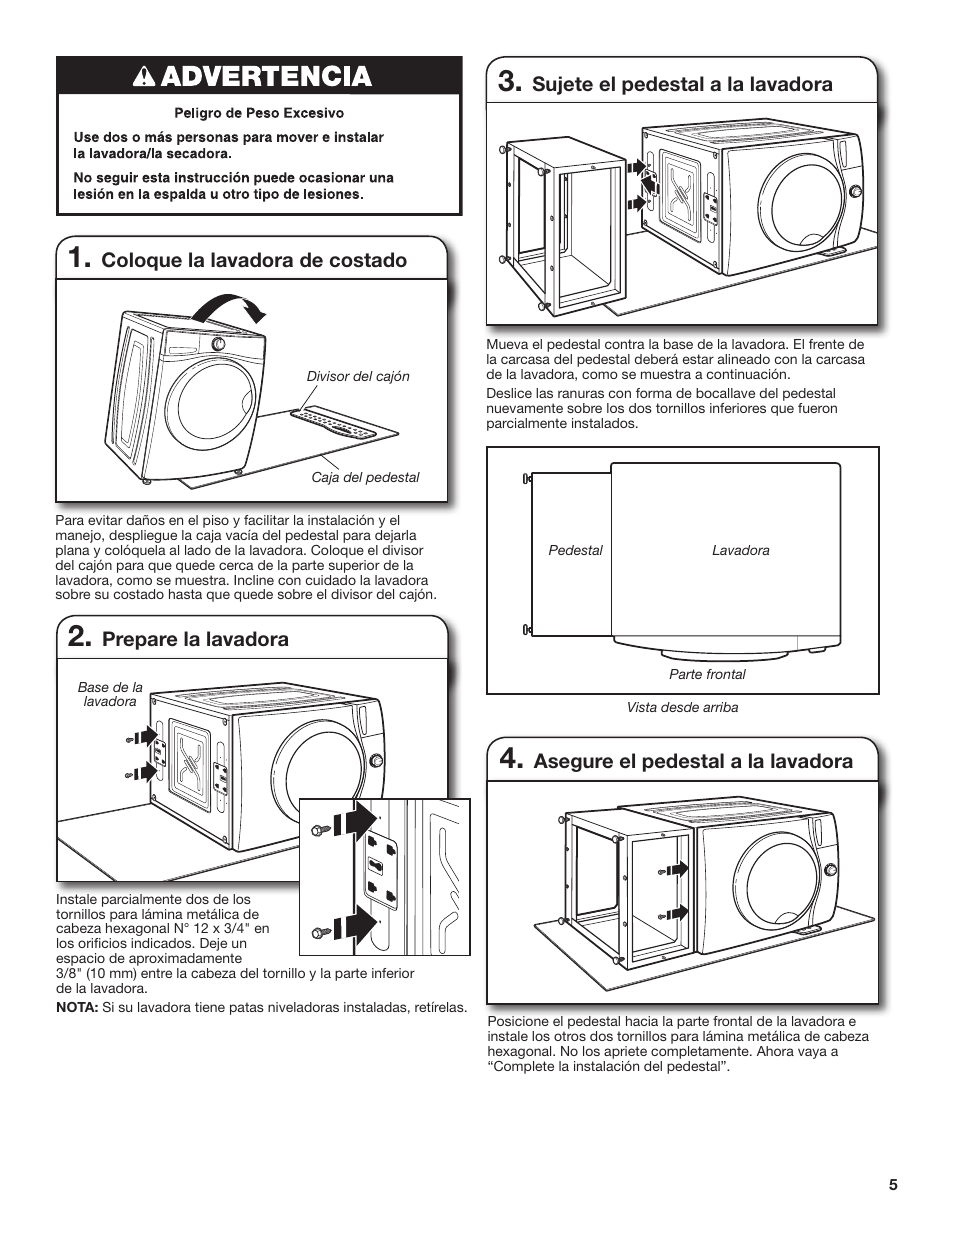 Prepare la lavadora, Coloque la lavadora costado, el pedestal a la lavadora | Whirlpool XHPC155XG Manual del usuario | Página 5 / 8 |